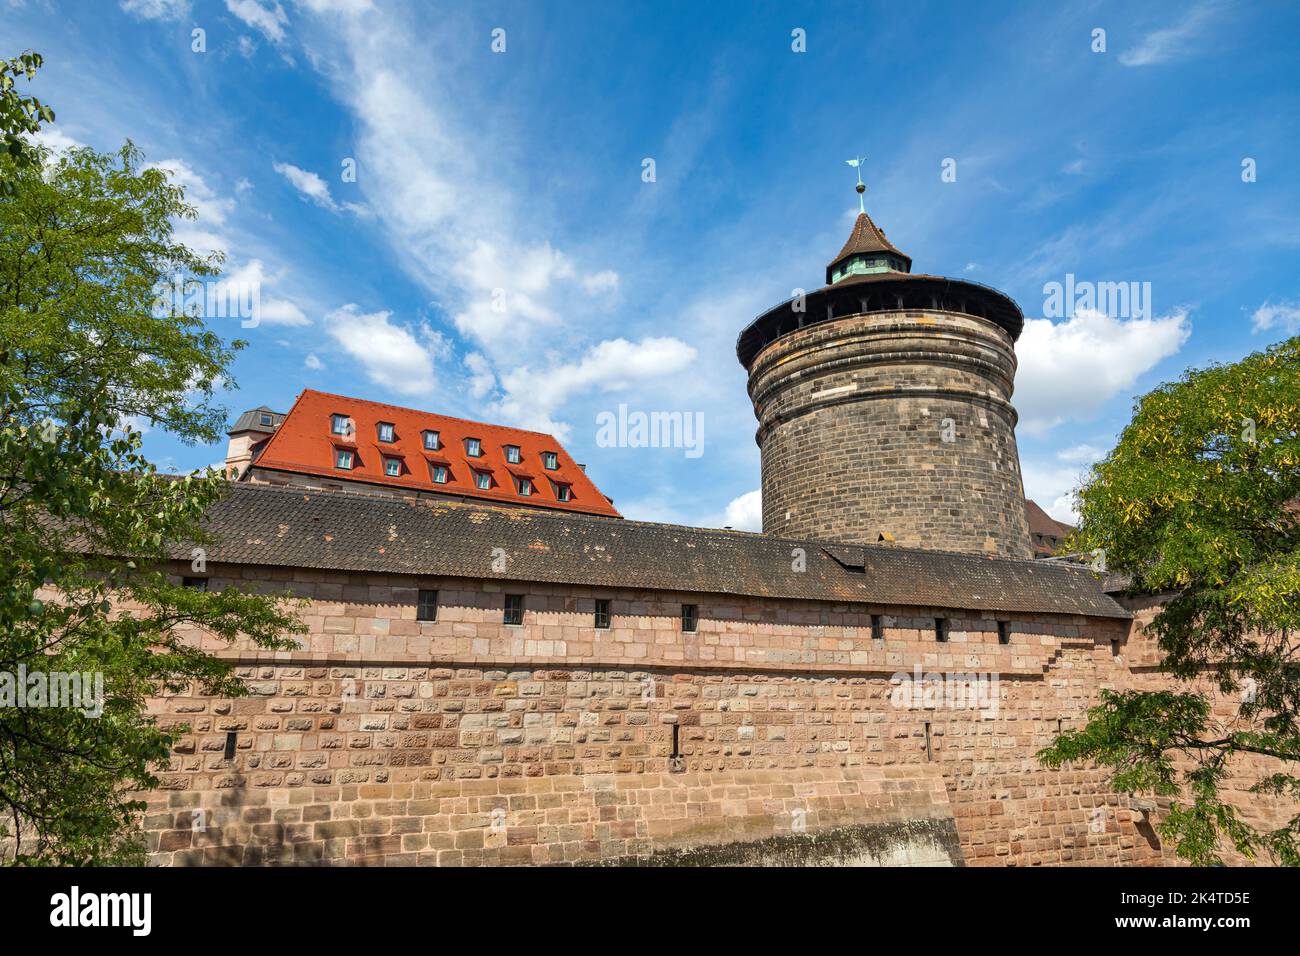 Wachturm An Der Historischen Stadtmauer In Nürnberg, Bayern, Franken, Deutschland, Europa Stockfoto